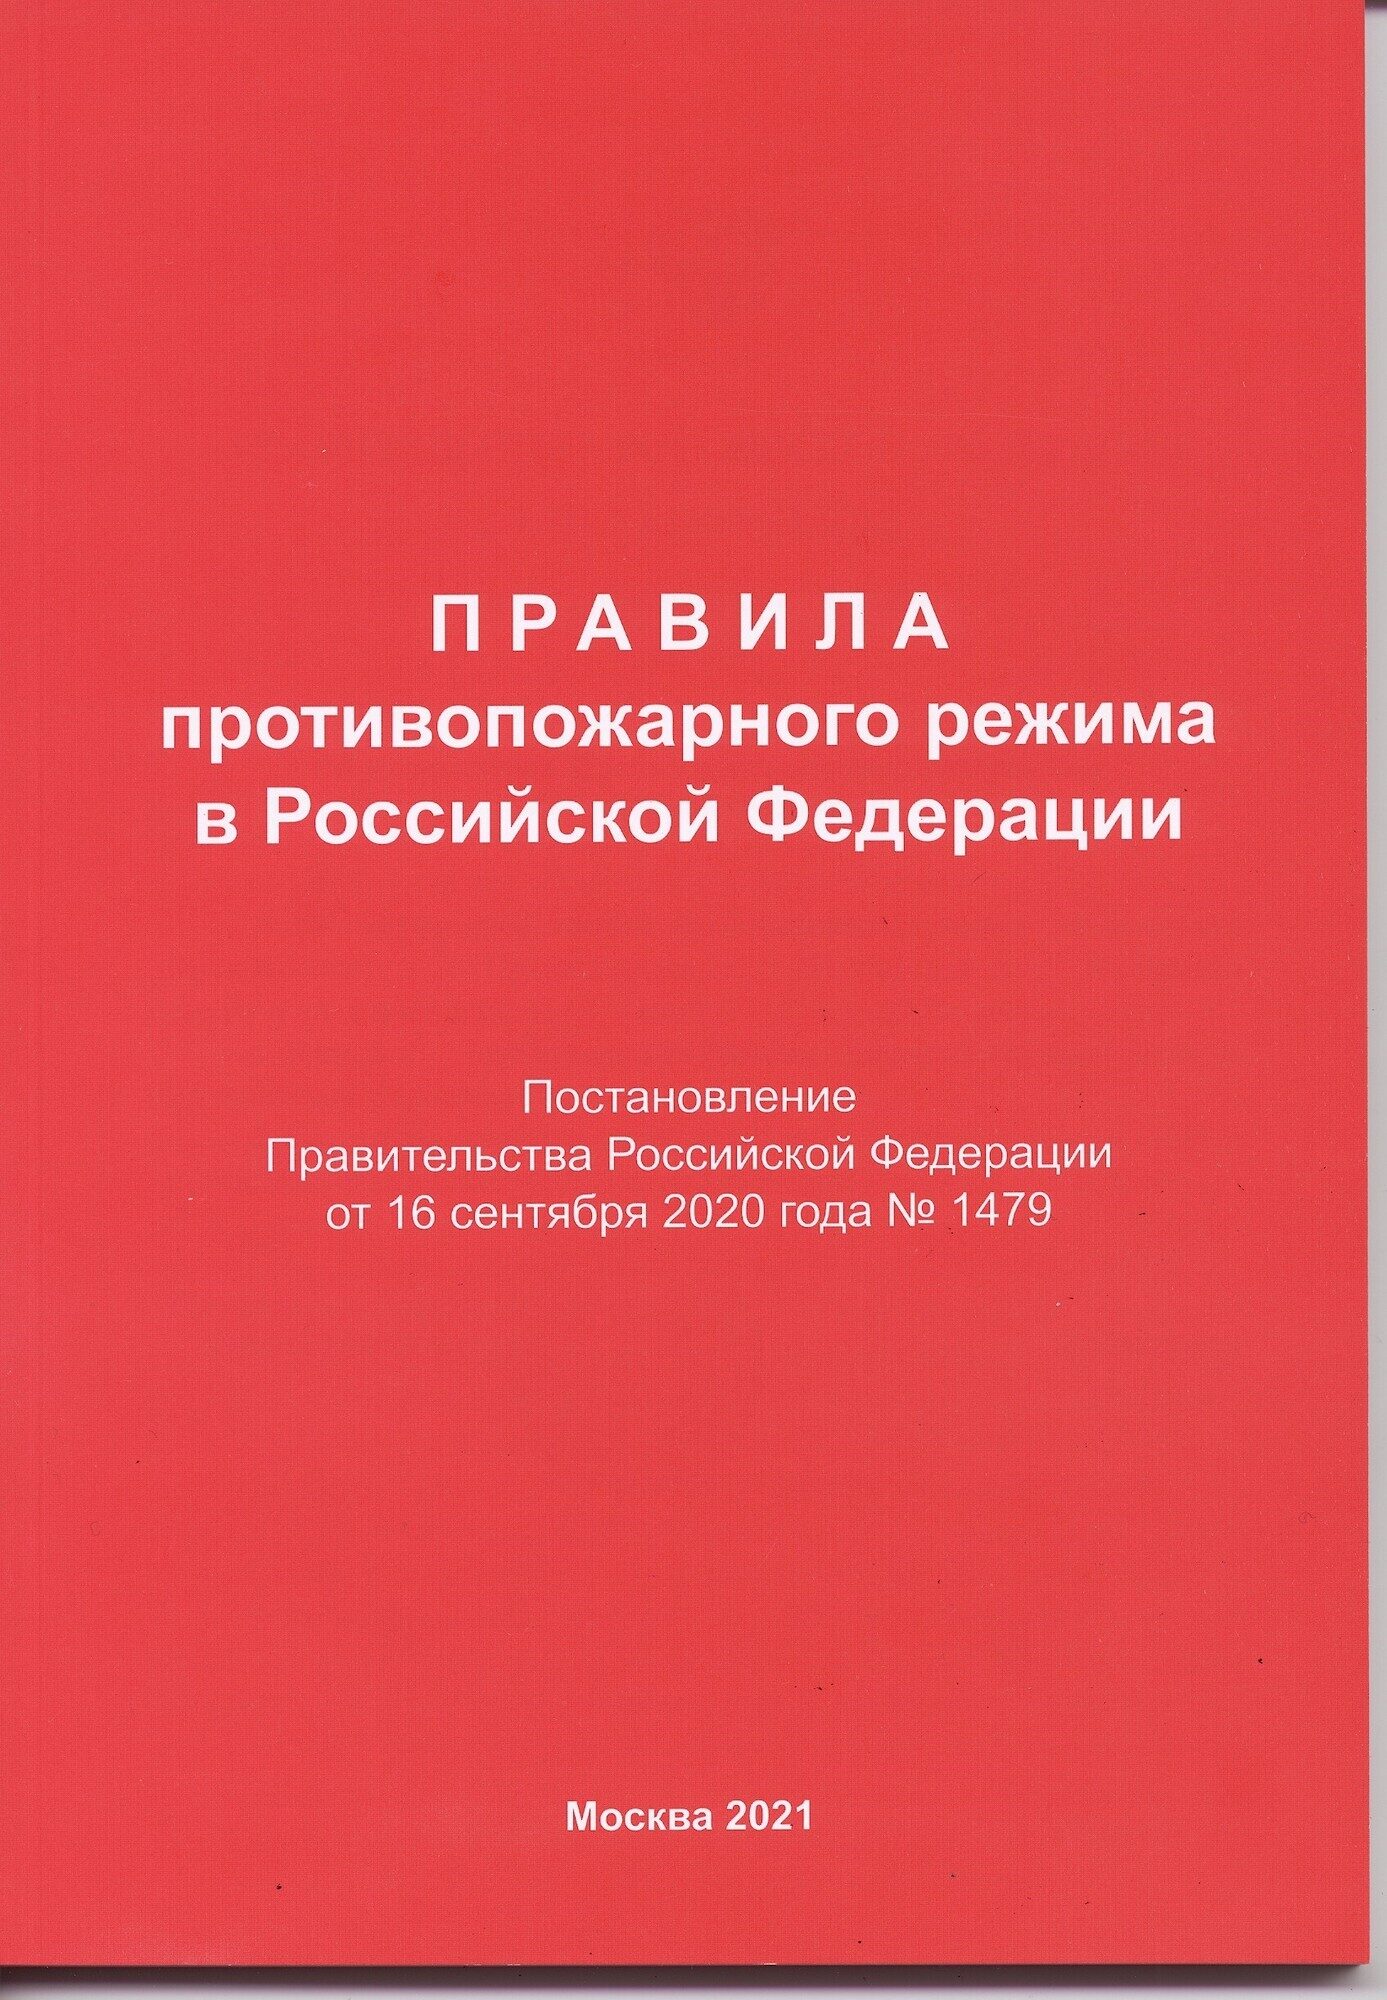 Правила противопожарного режима в Российской Федерации 1479. Противопожарные правила рф 2021